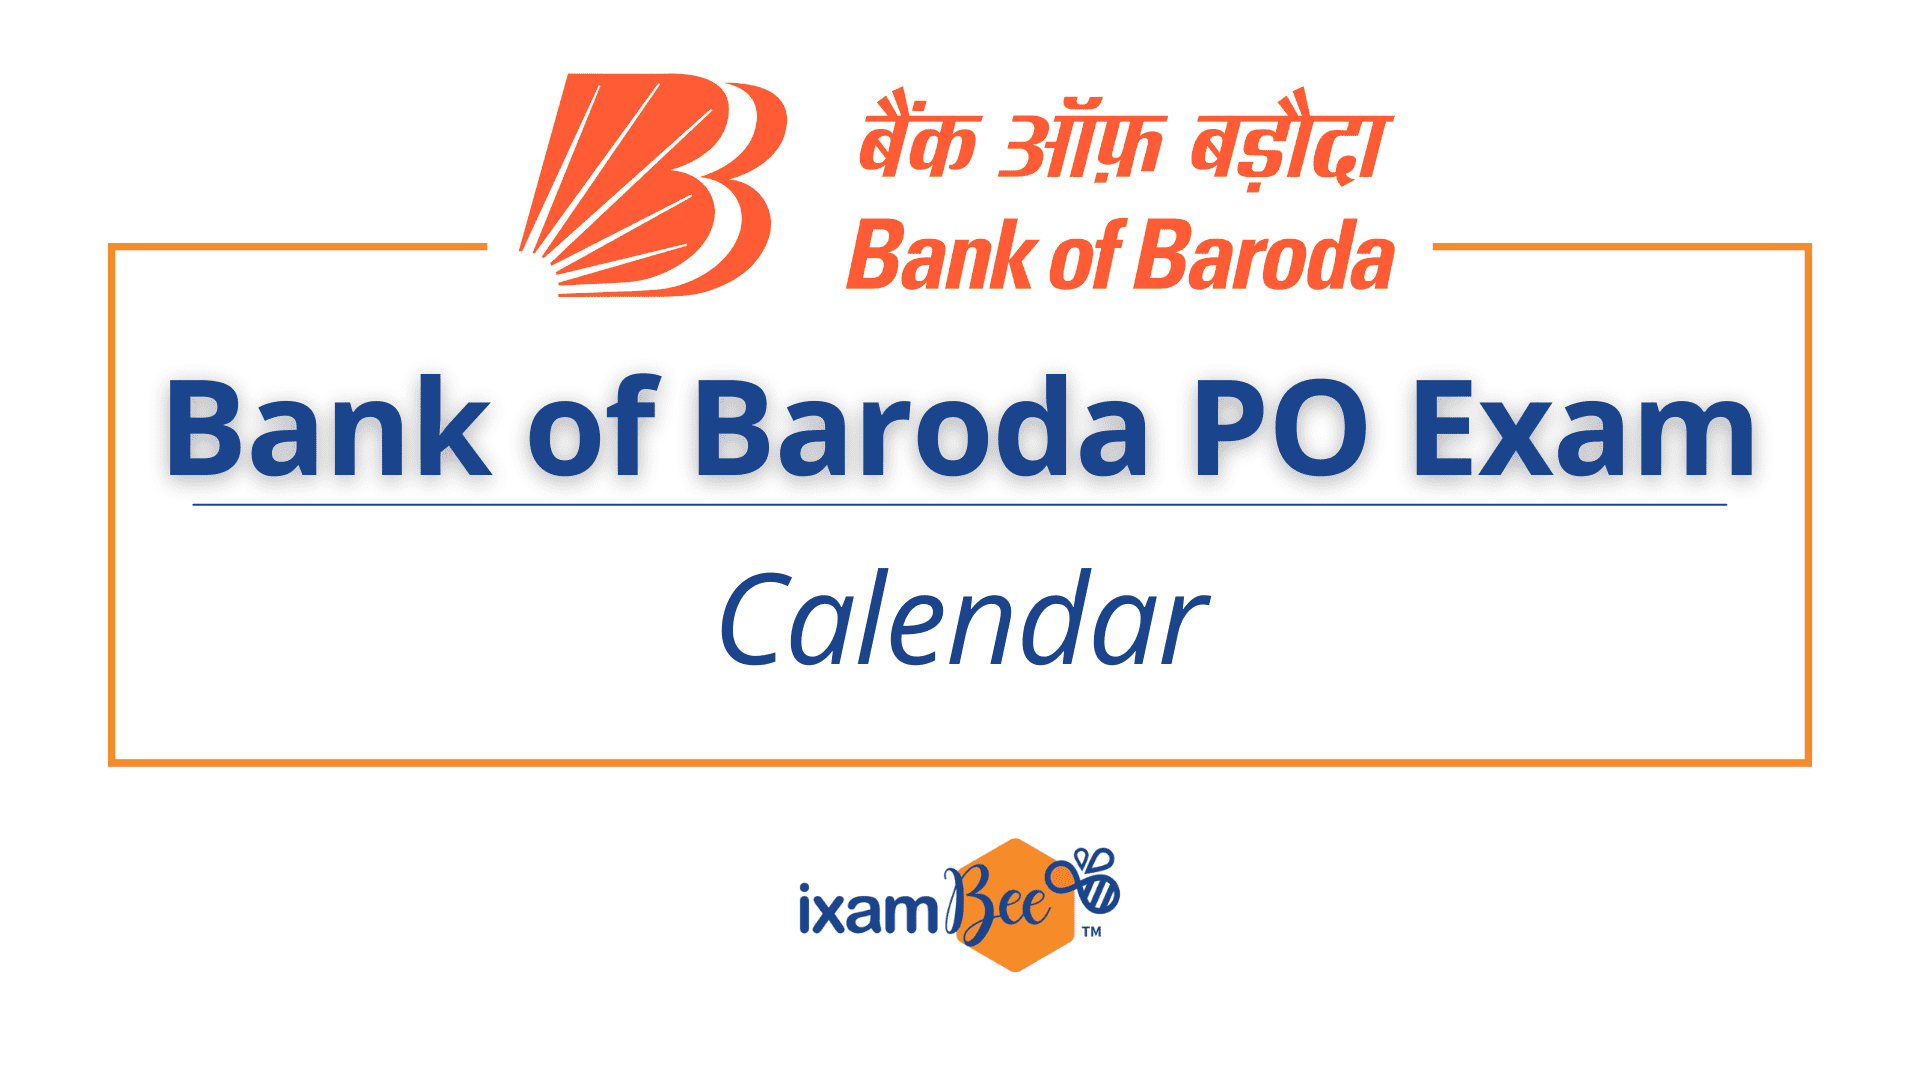 Bank of Baroda PO Exam Calendar